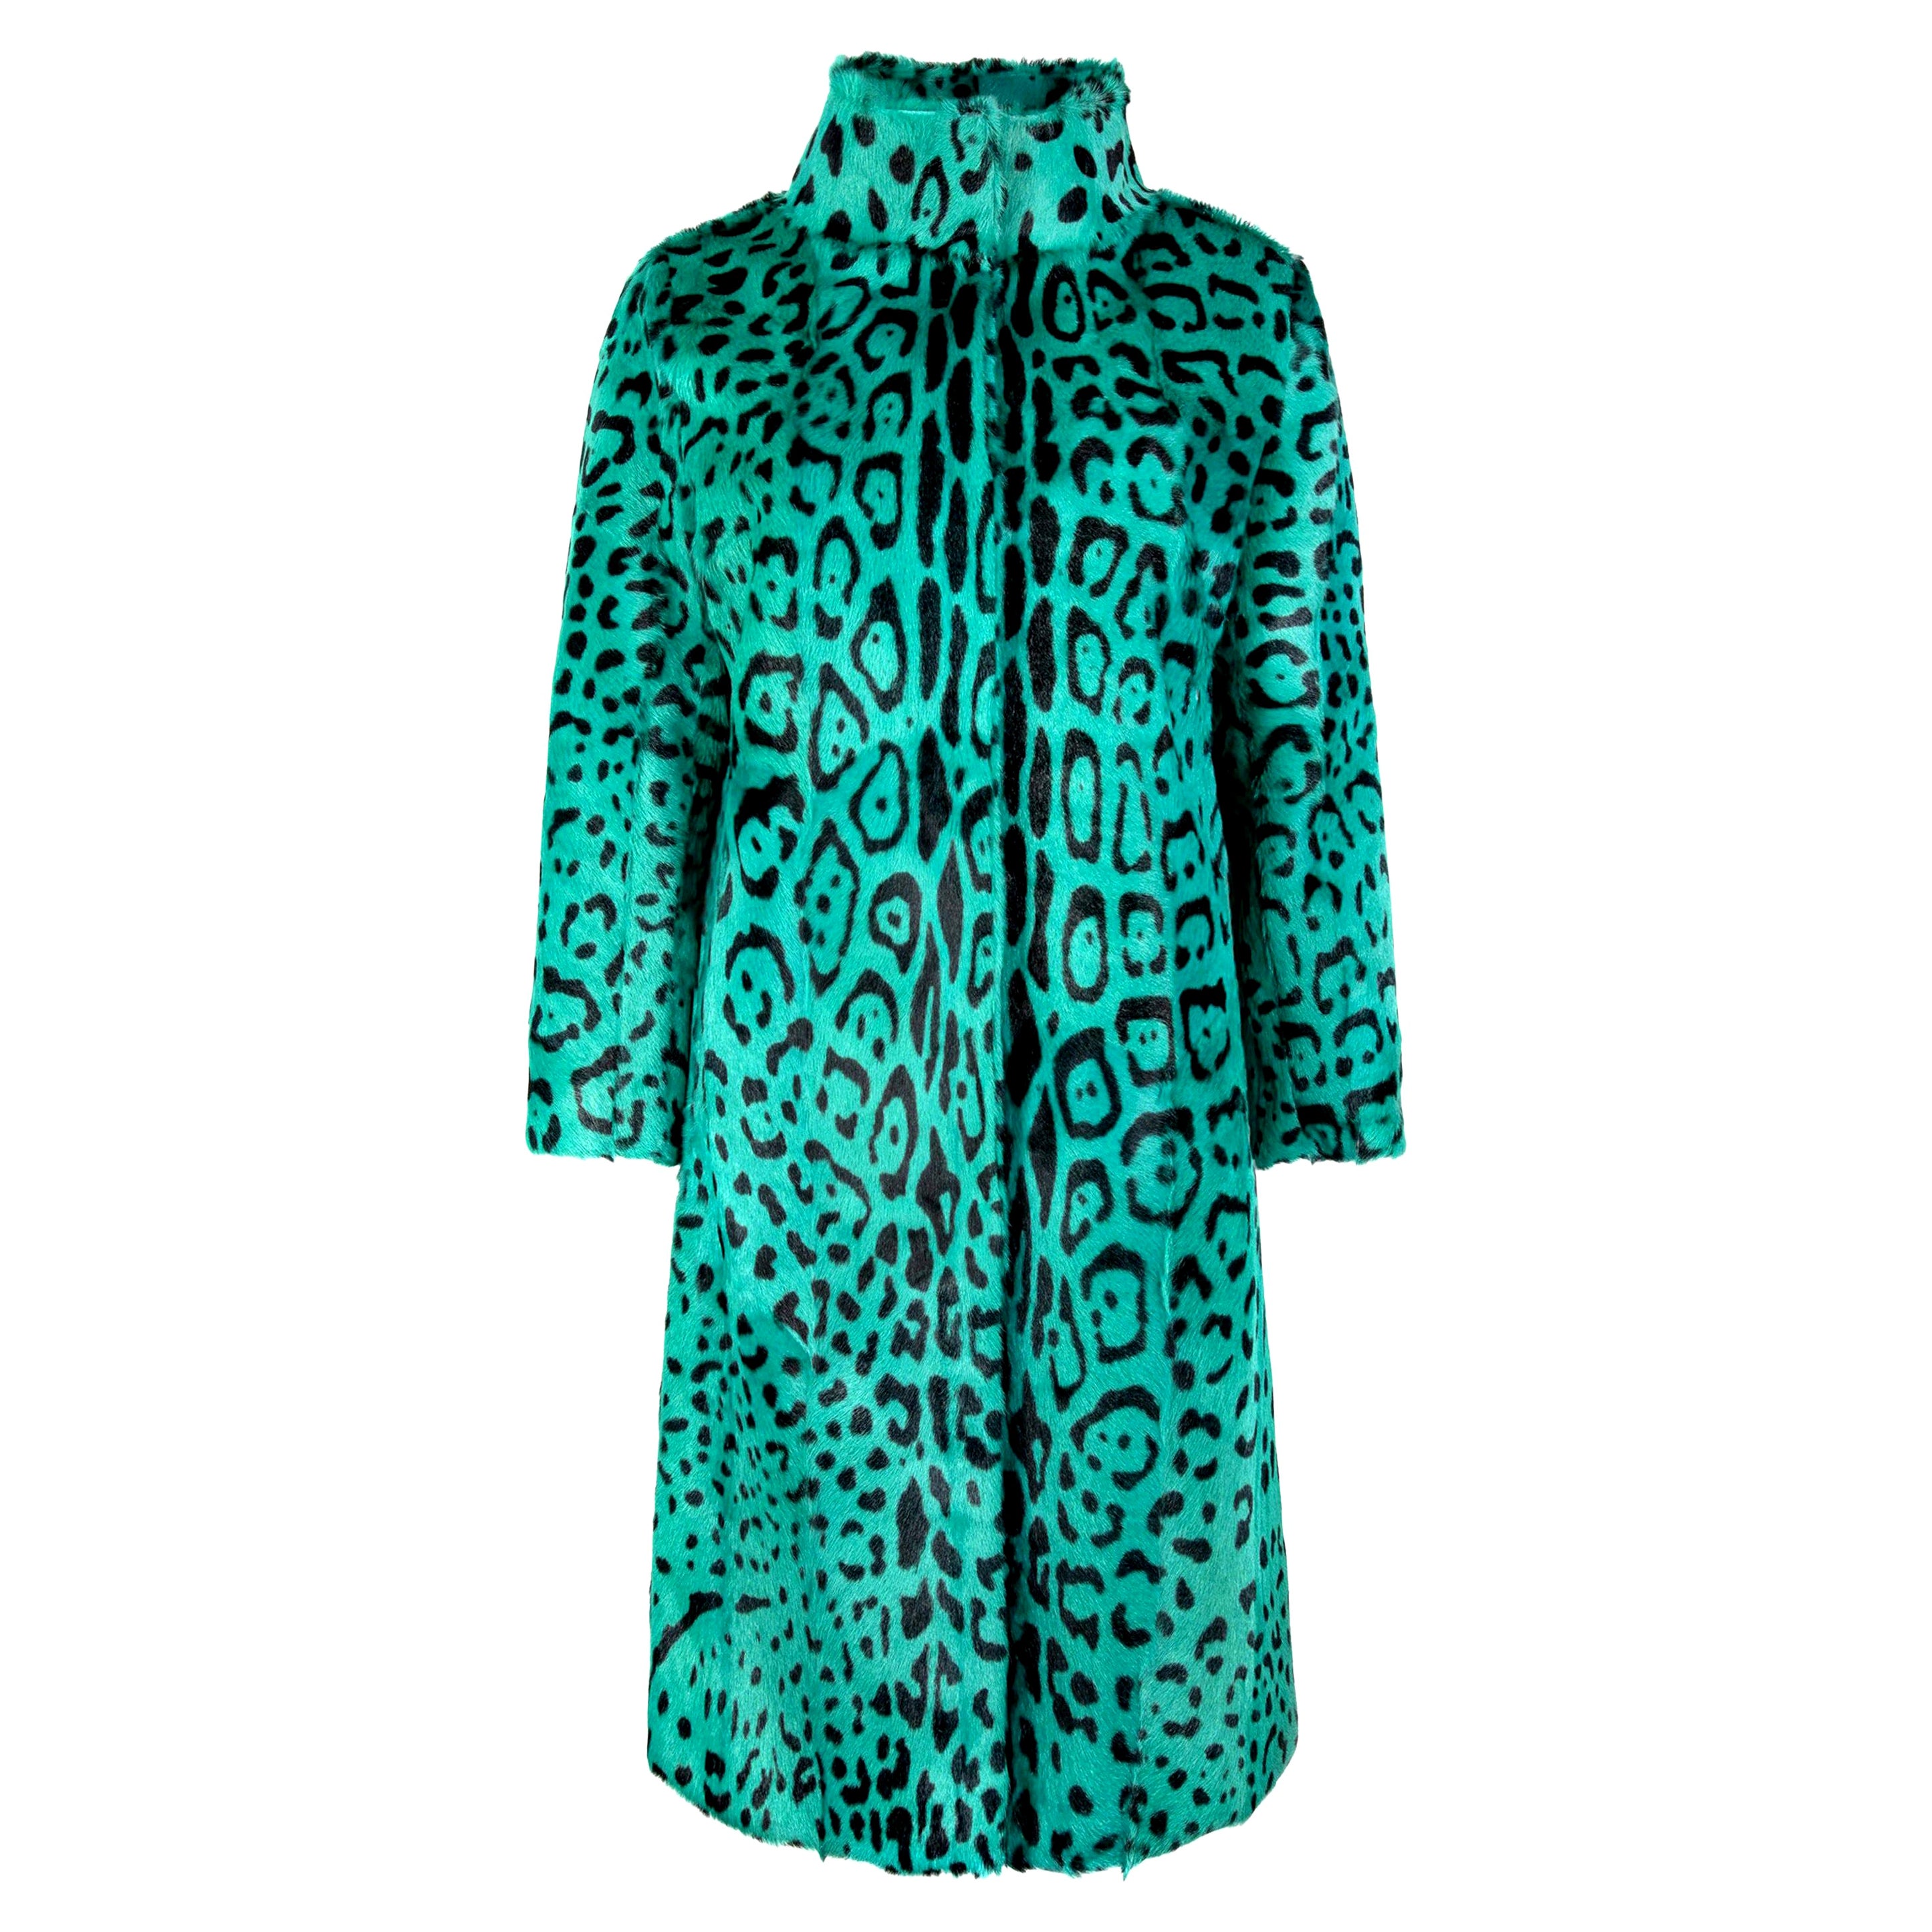 Verheyen London Mantel aus Ziegenhaar mit hohem Kragen und grünem Leopardenmuster Größe Uk 12